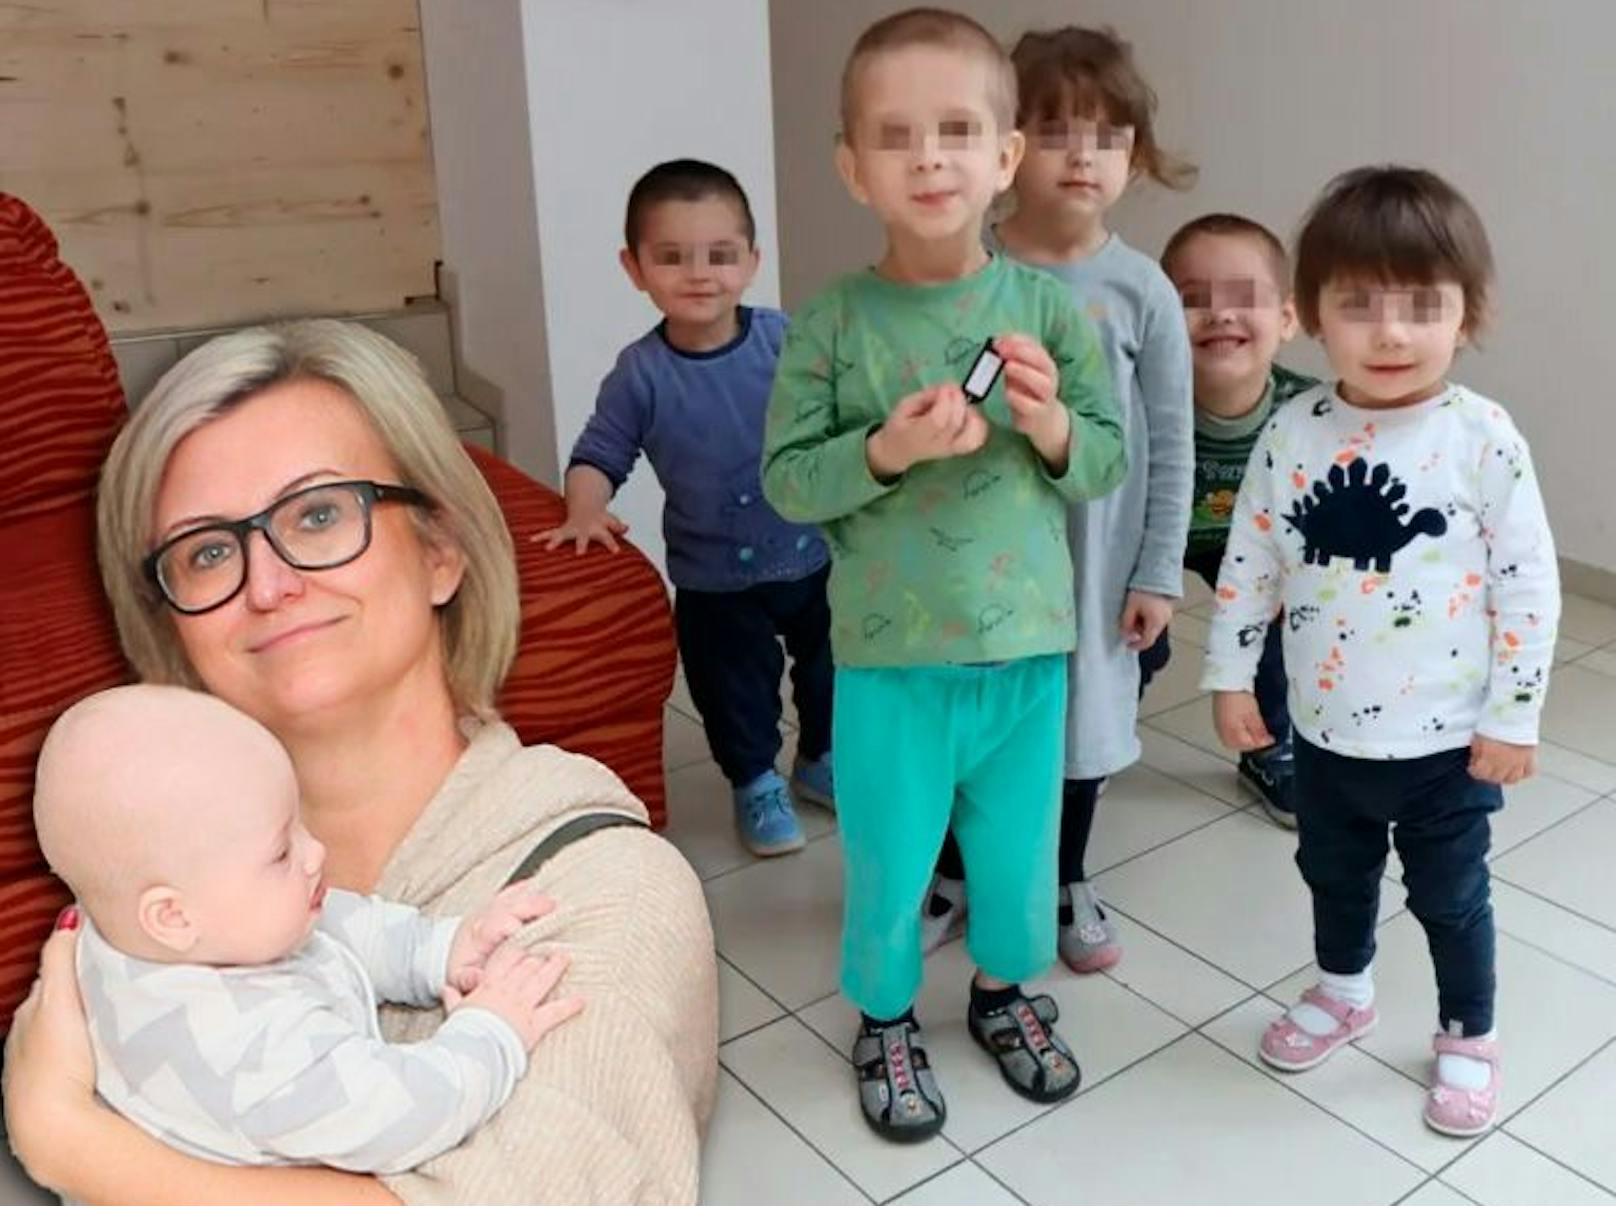 Der Verein "Kleine Herzen" hat heuer bereits ein Waisenhaus mit 70 Kindern aus der Ukraine ins Burgenland evakuiert. In den nächsten Wochen sollen 60 weitere Kinder in Sicherheit gebracht werden, so Marta Fröhlich Kudlicki (l.).